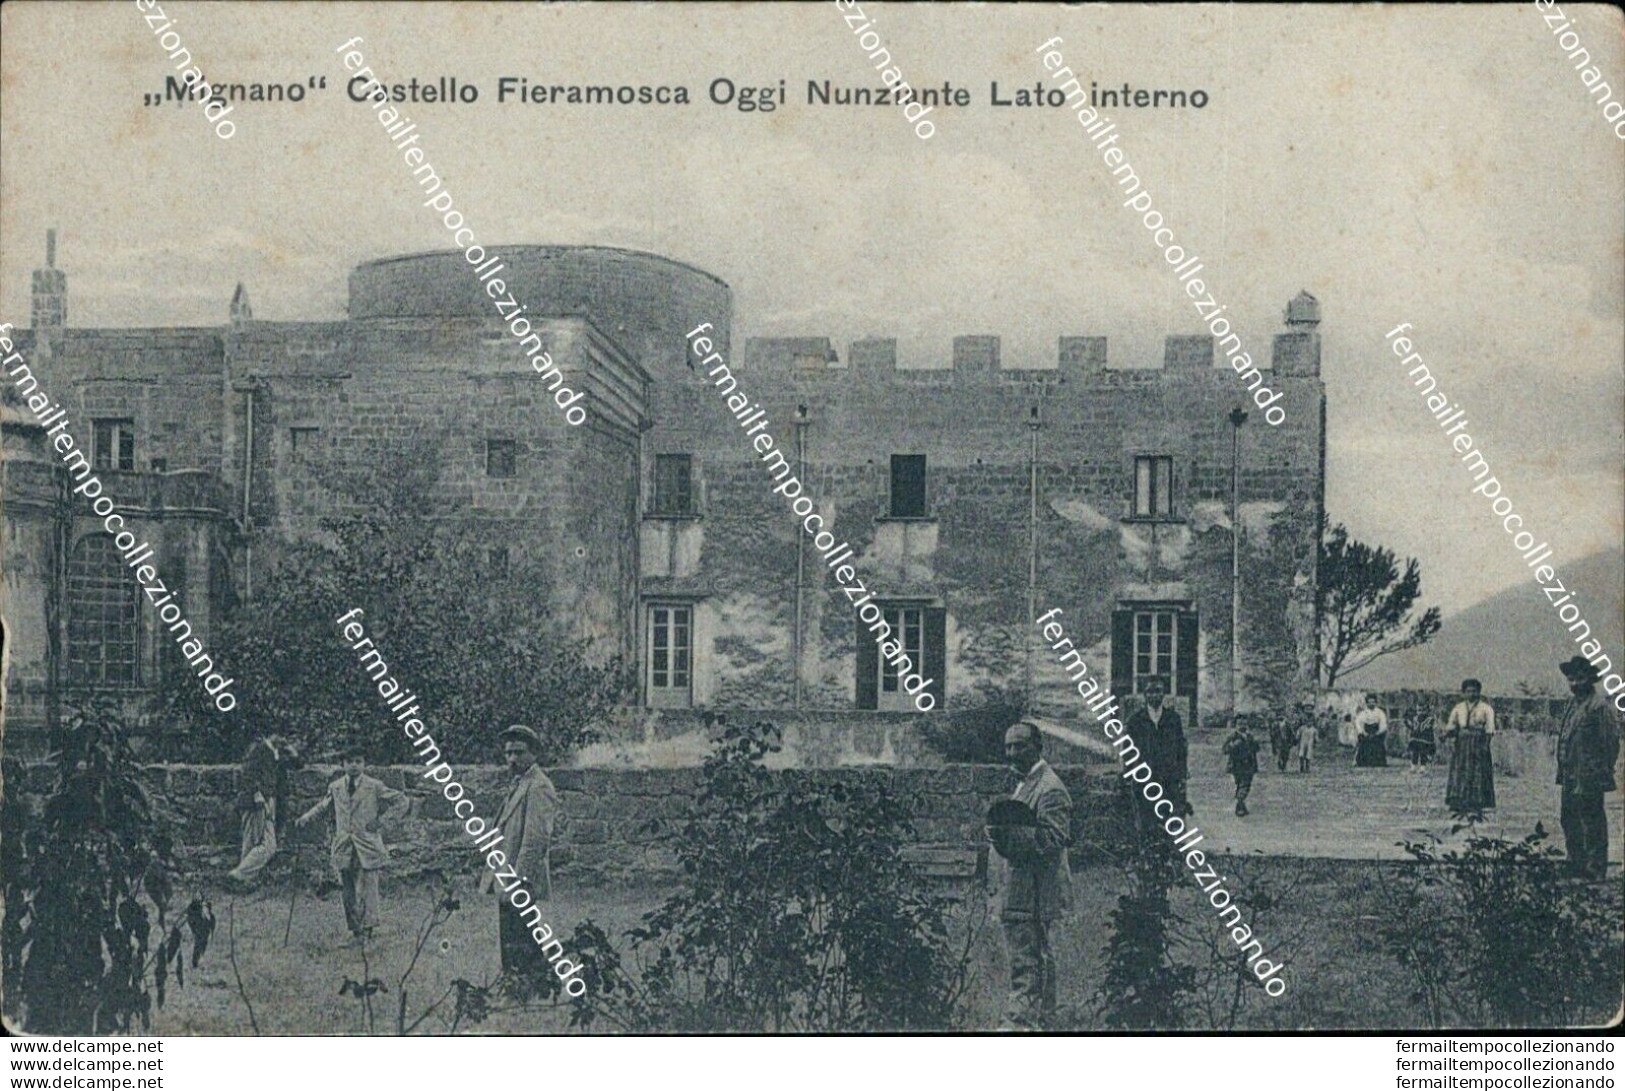 Bq595 Cartolina Mignano Castello Fieramosca Oggi Nunziante Lato Interno Caserta - Caserta